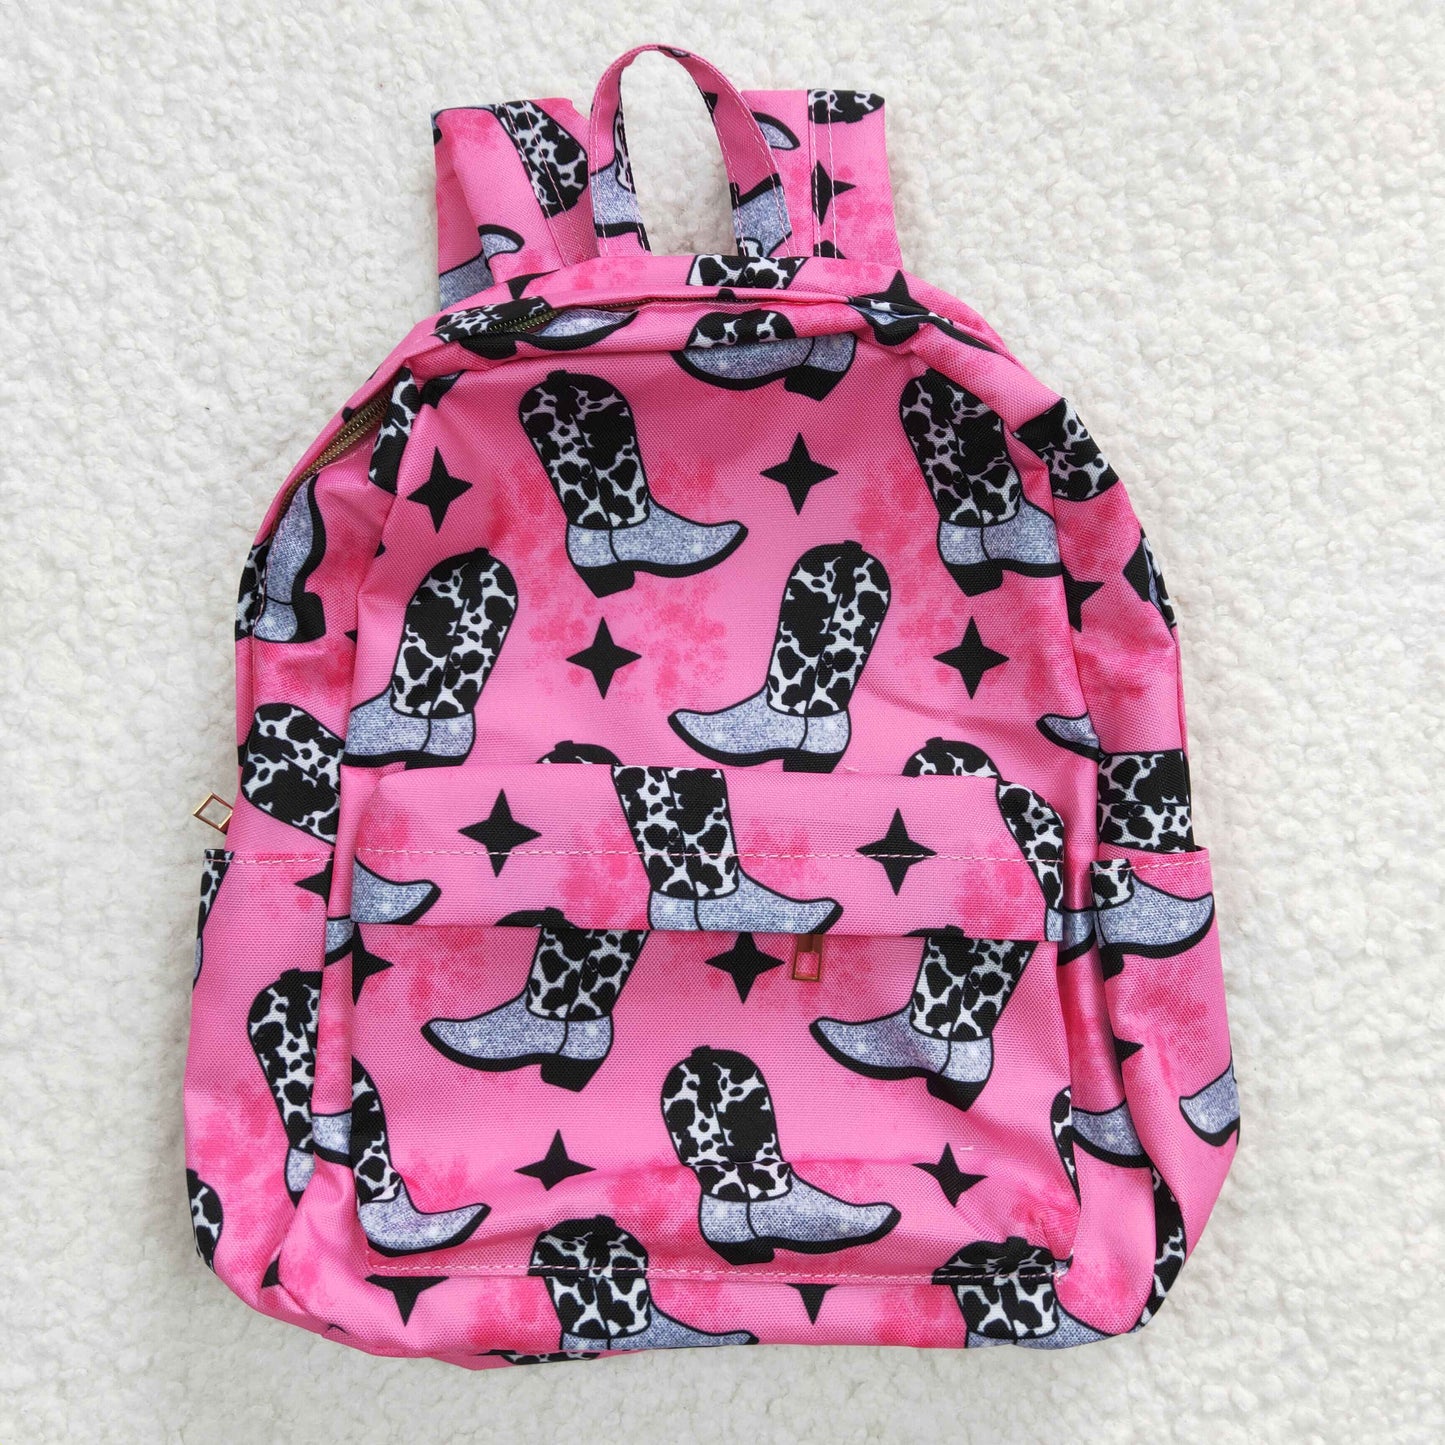 BA0037 Kids Girls Western Boots Hot Pink Color Backpack Bag